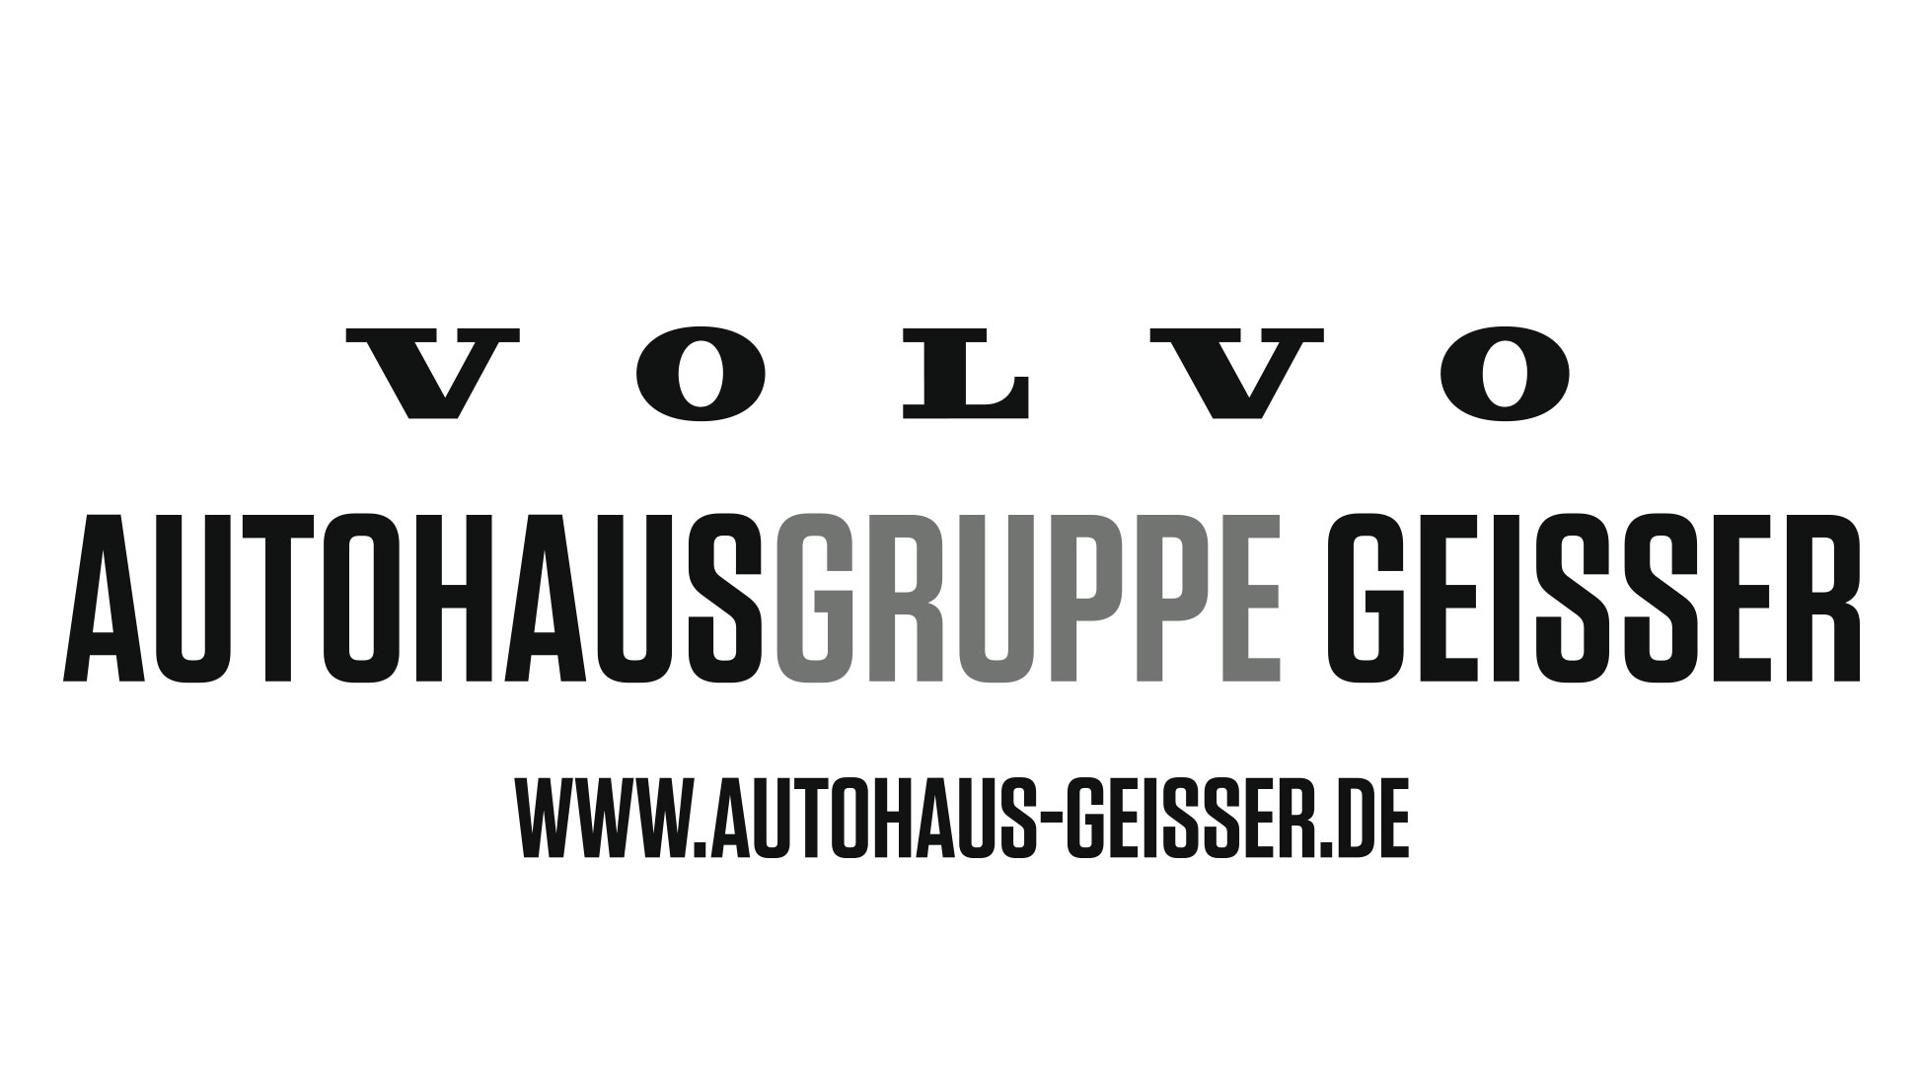 Volvo Autohausgruppe Geisser